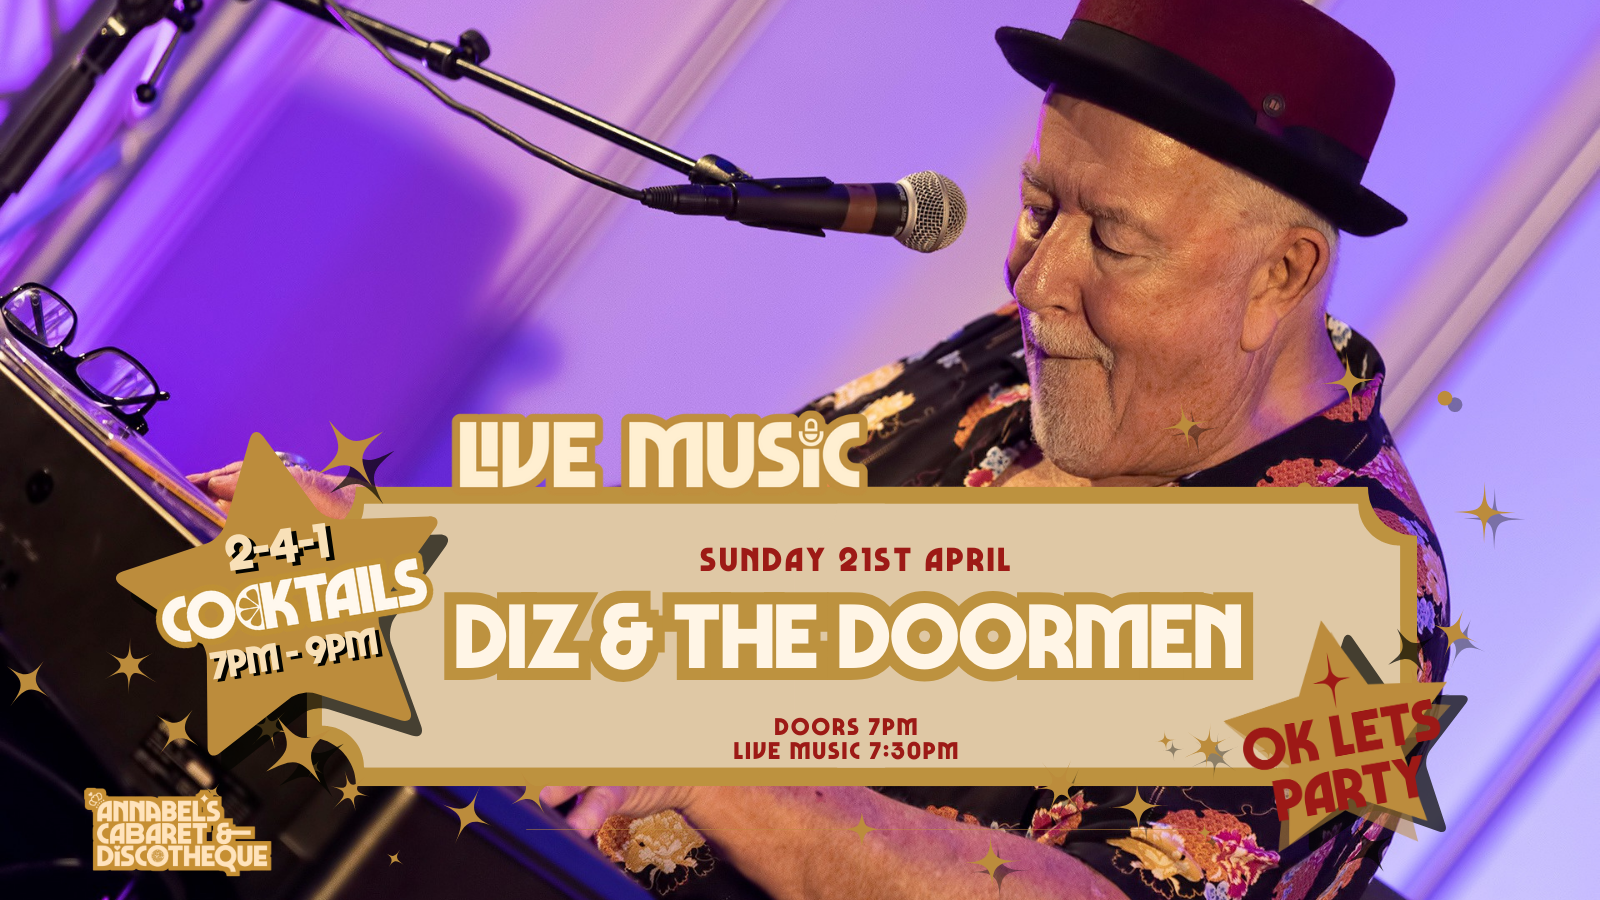 Live Music: DIZ & THE DOORMEN // Annabel’s Cabaret & Discotheque